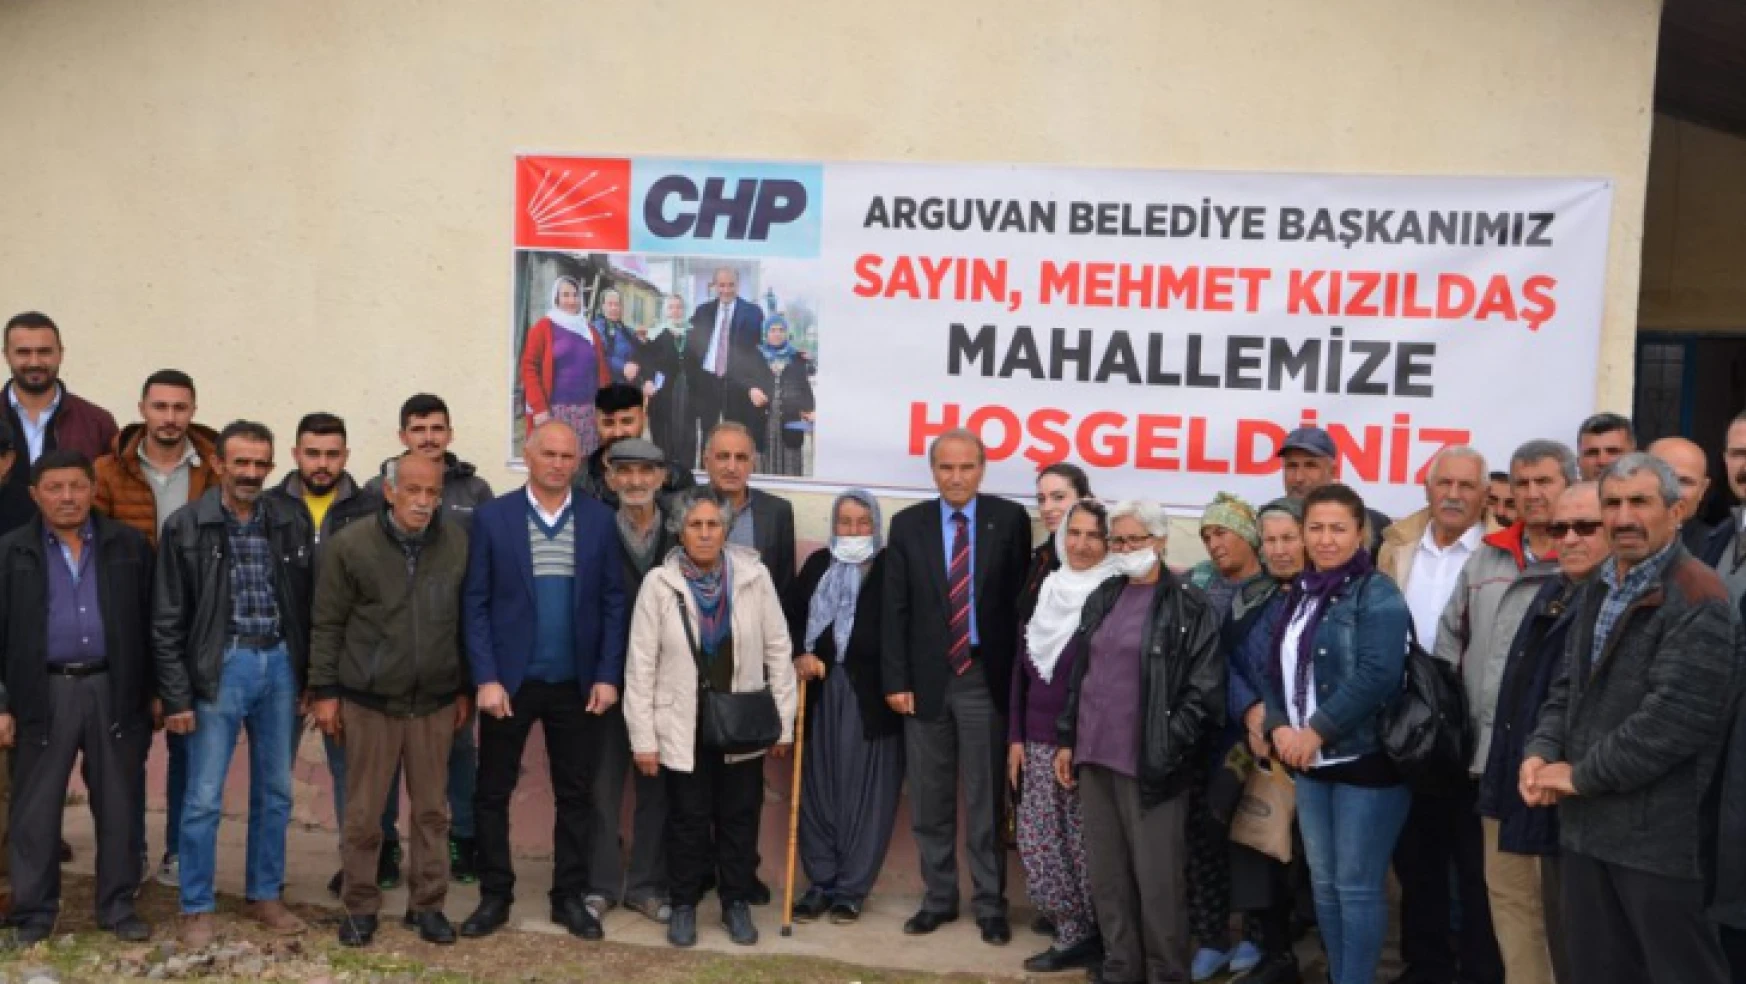 Arguvan Belediye Başkanı Mehmet Kızıldaş Mahalleleri Ziyaret Etti